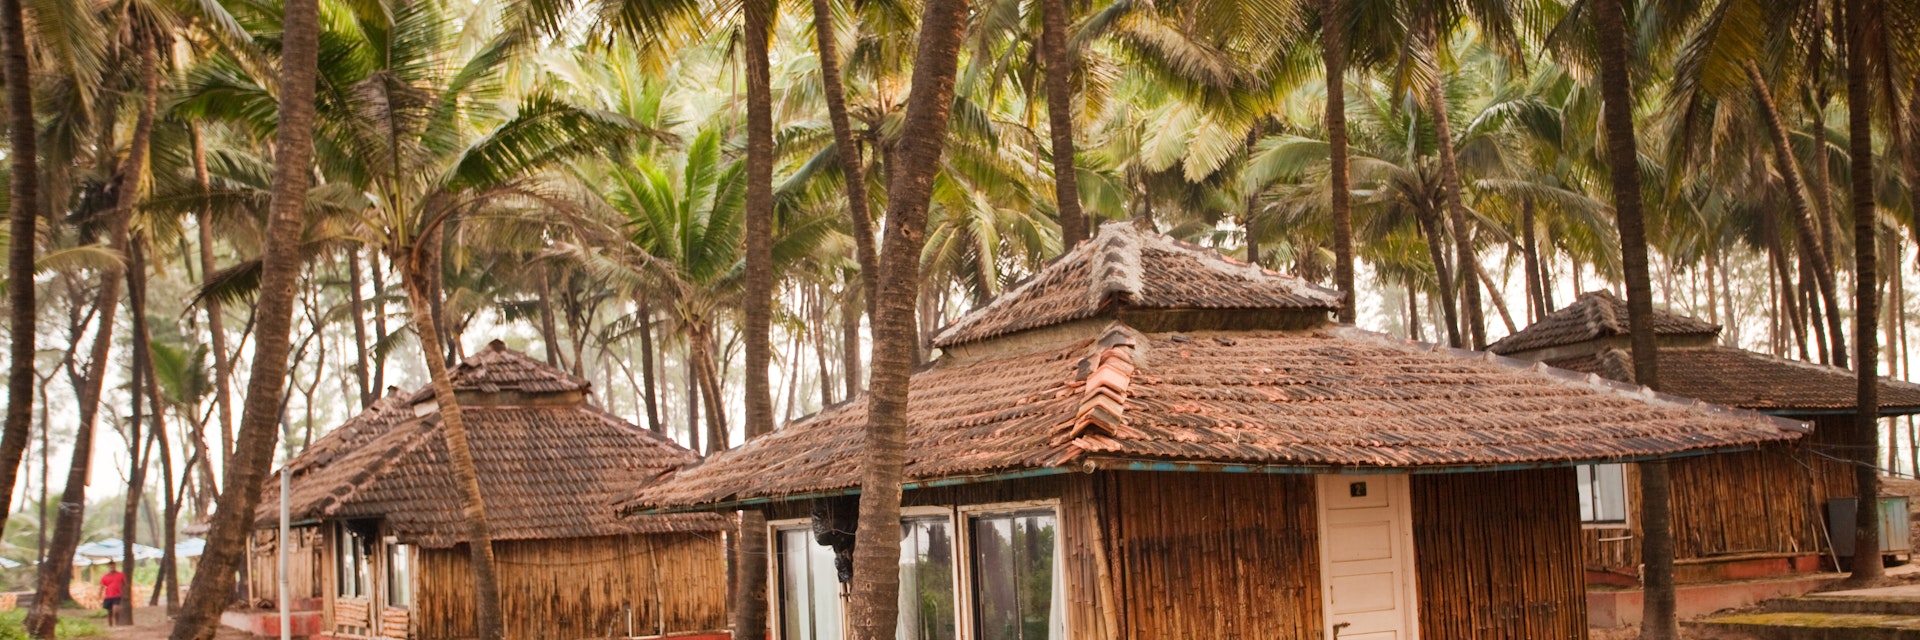 Holiday Resort located at the Konkan Beach in Maharashtra India